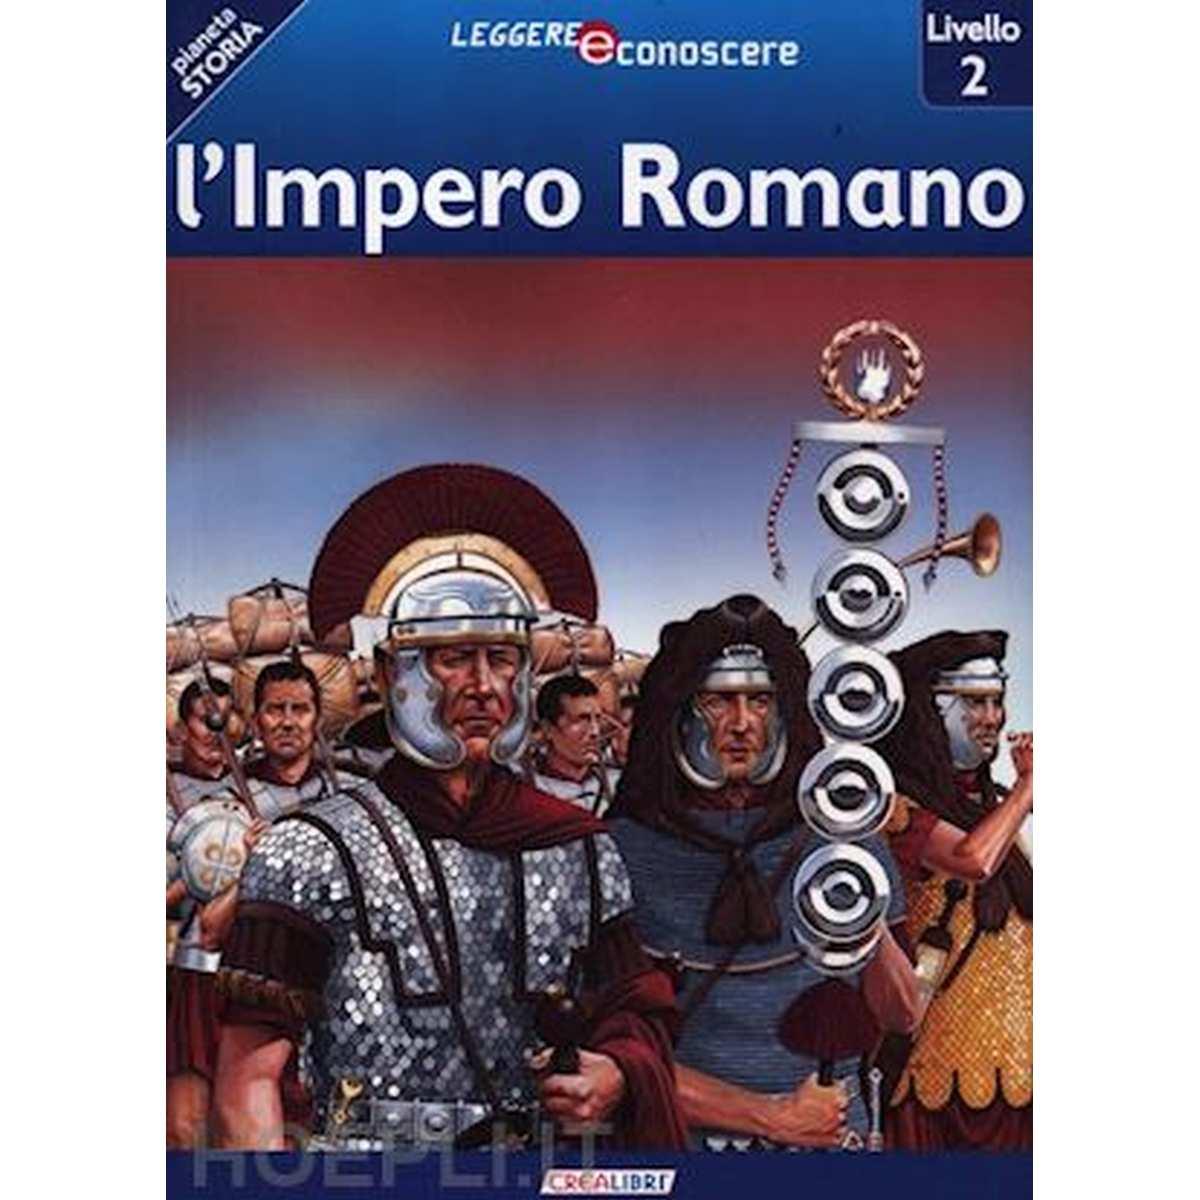 Leggere e conoscere . l'impero romano